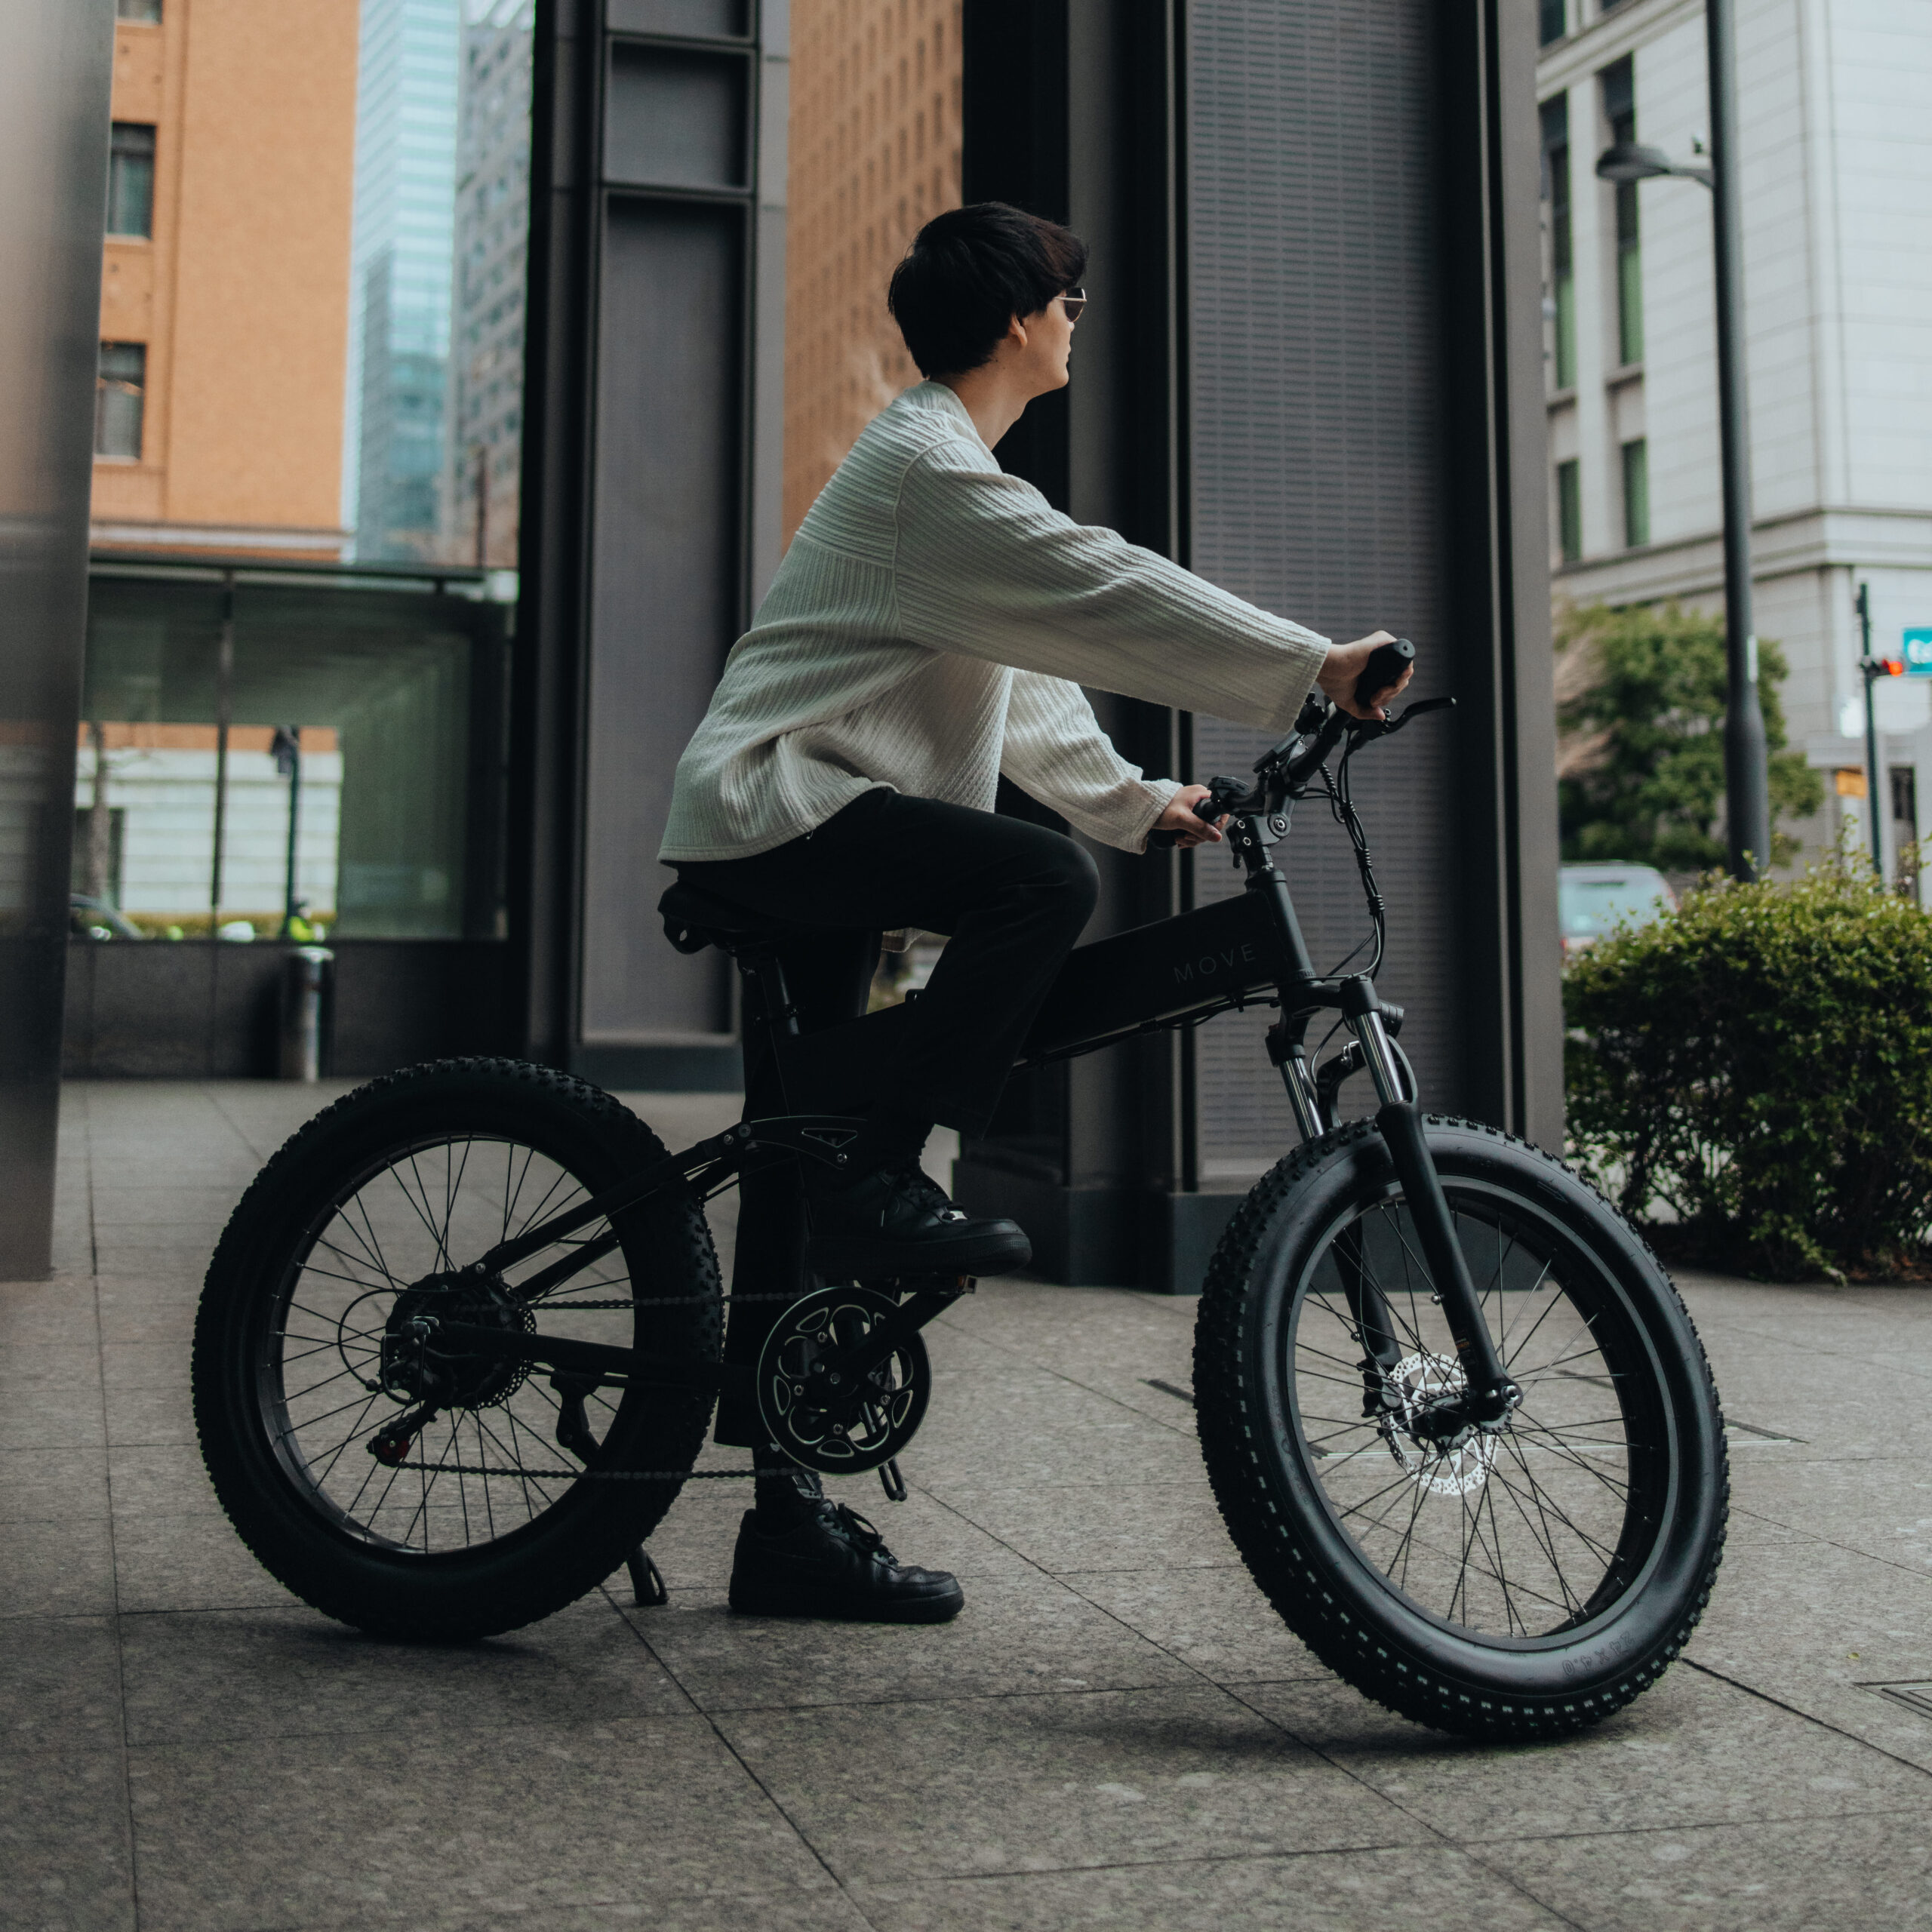 MOVE 日本発のe-bikeブランドメディアサイト